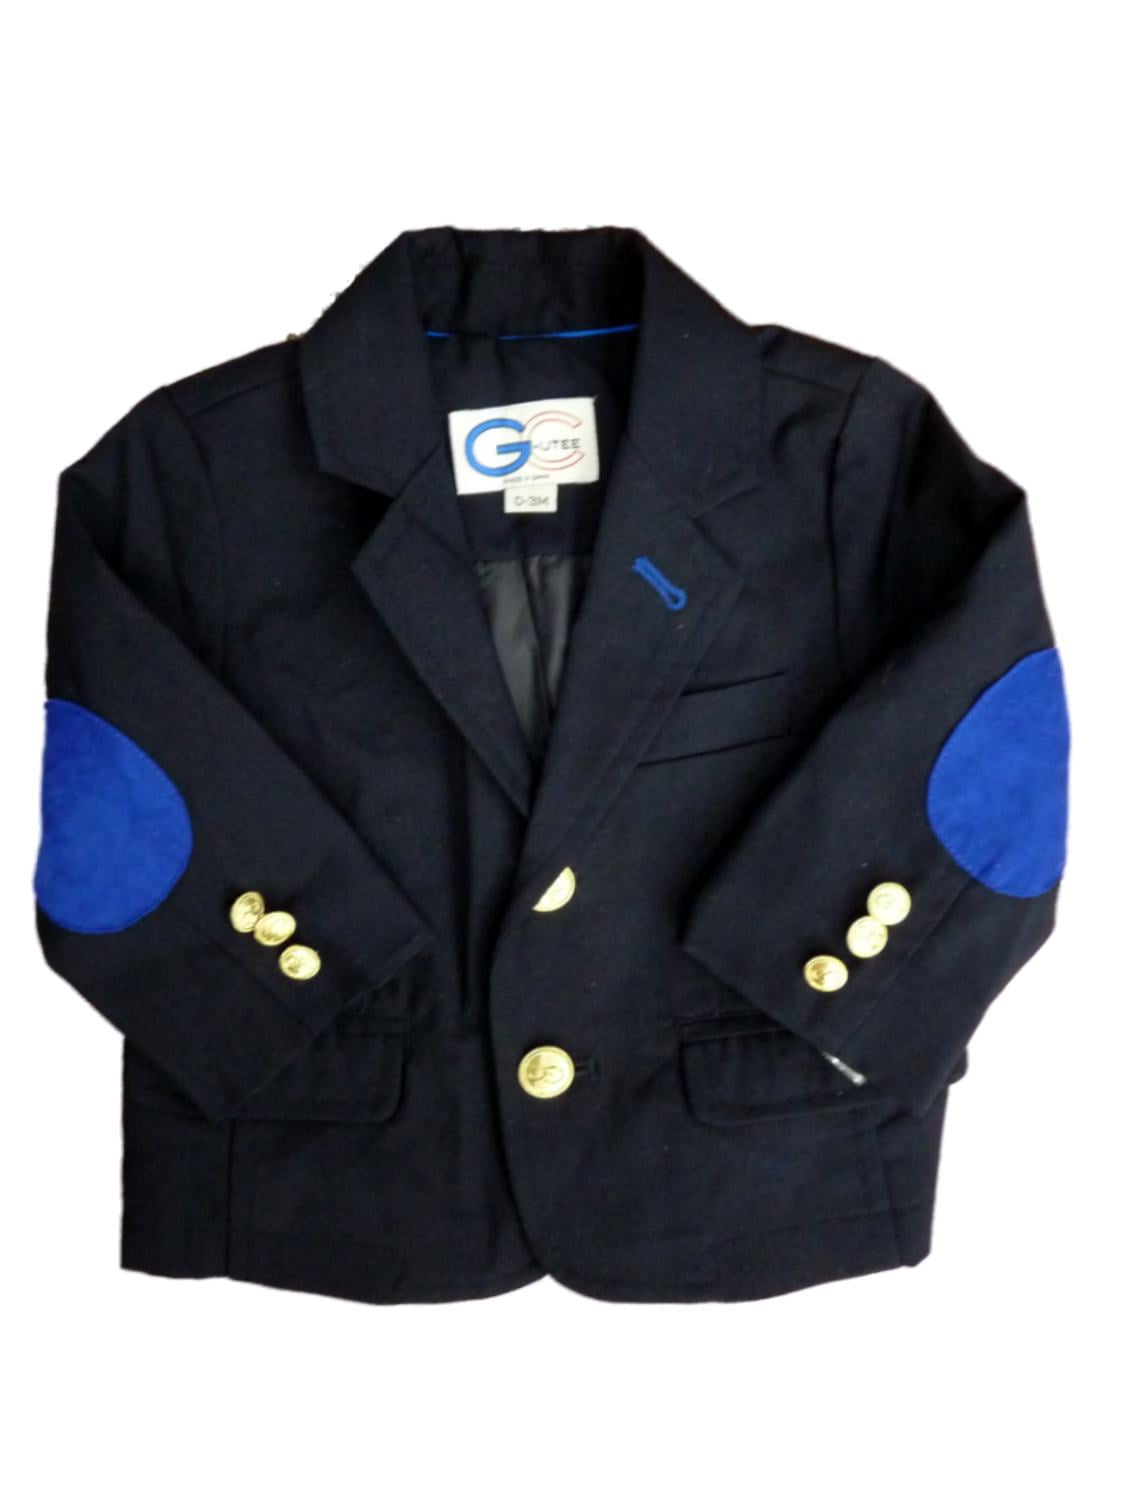 dressy navy jacket